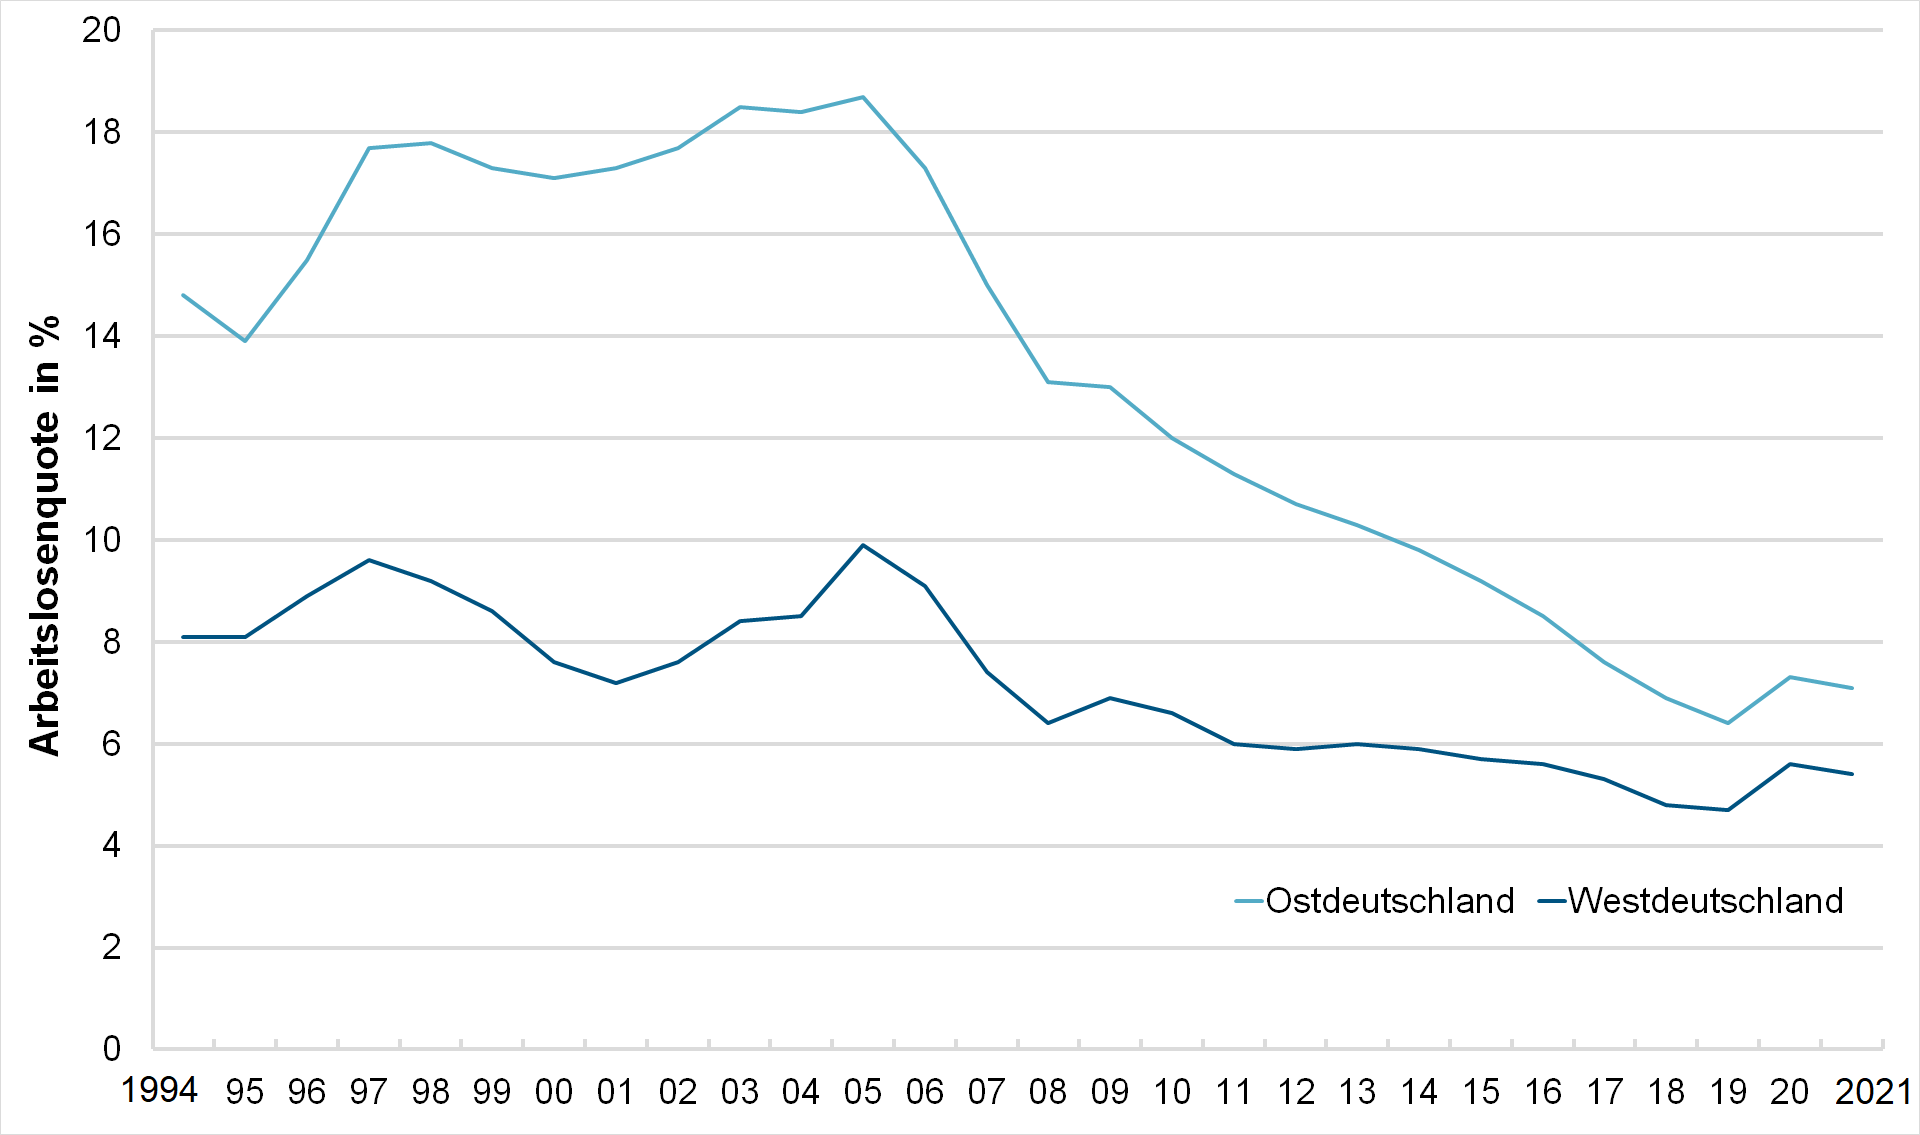 Sowohl in West- als auch in Ostdeutschland sinkt die Arbeitslosenquote seit 2005 kontinuierlich.